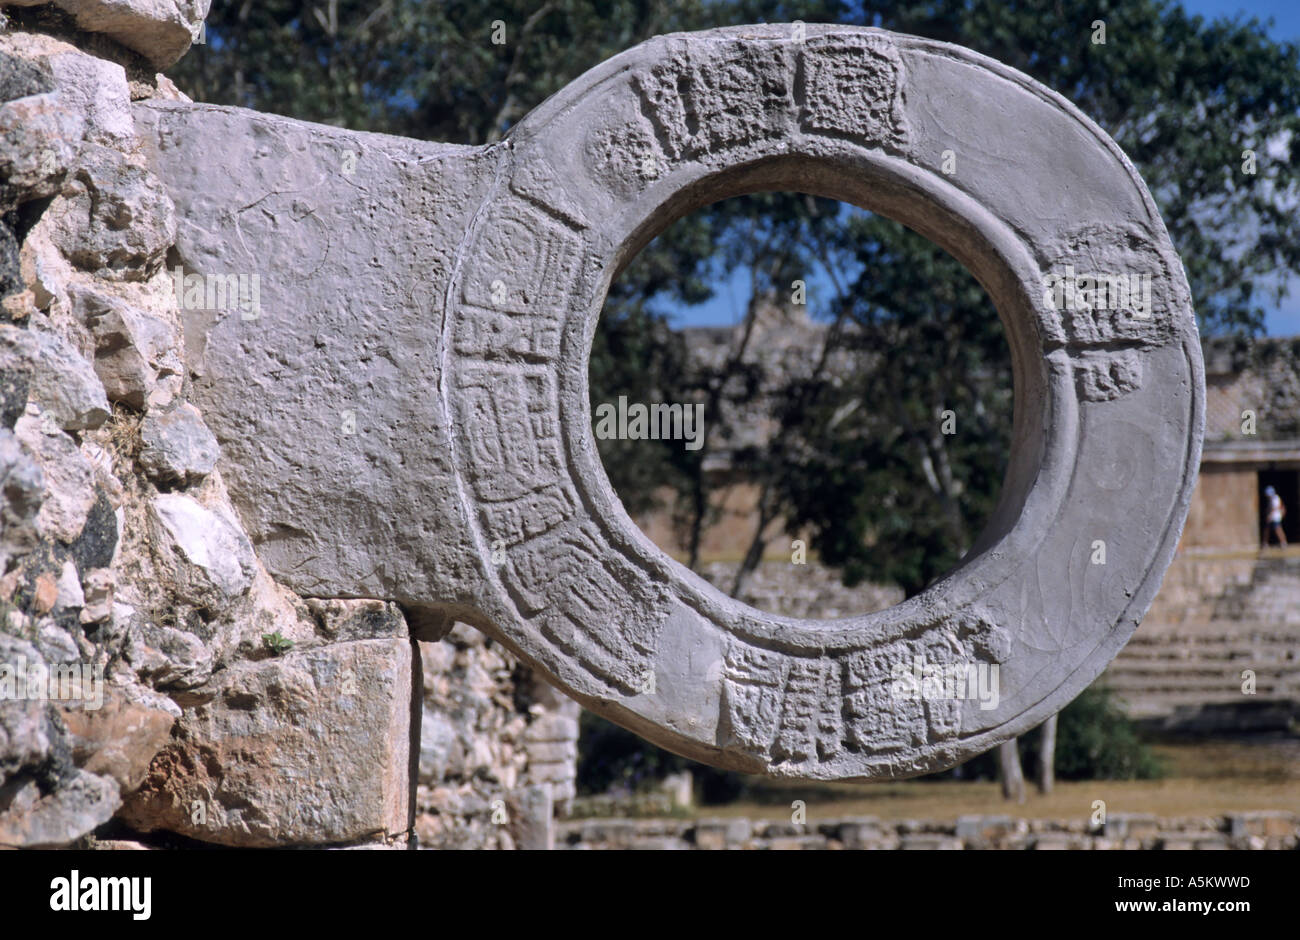 Messico yucatan stato uxmal palla dettagli di un cerchio di pietra utilizzata come obiettivo per il gioco maya della palla Foto Stock